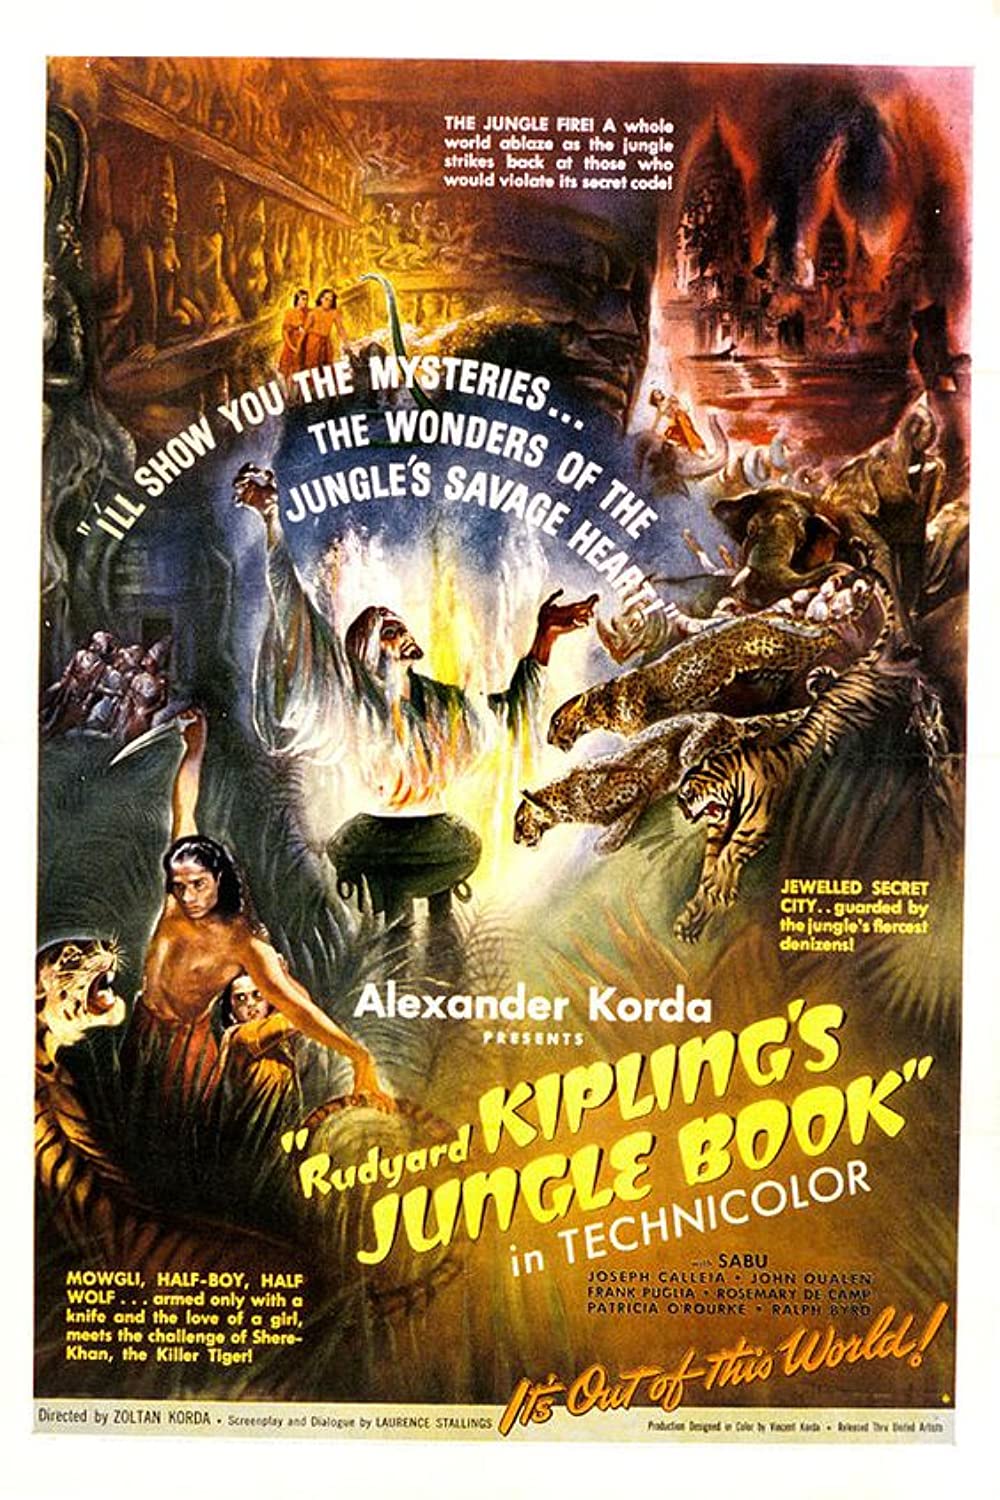 Filmbeschreibung zu Das Dschungelbuch (1942)